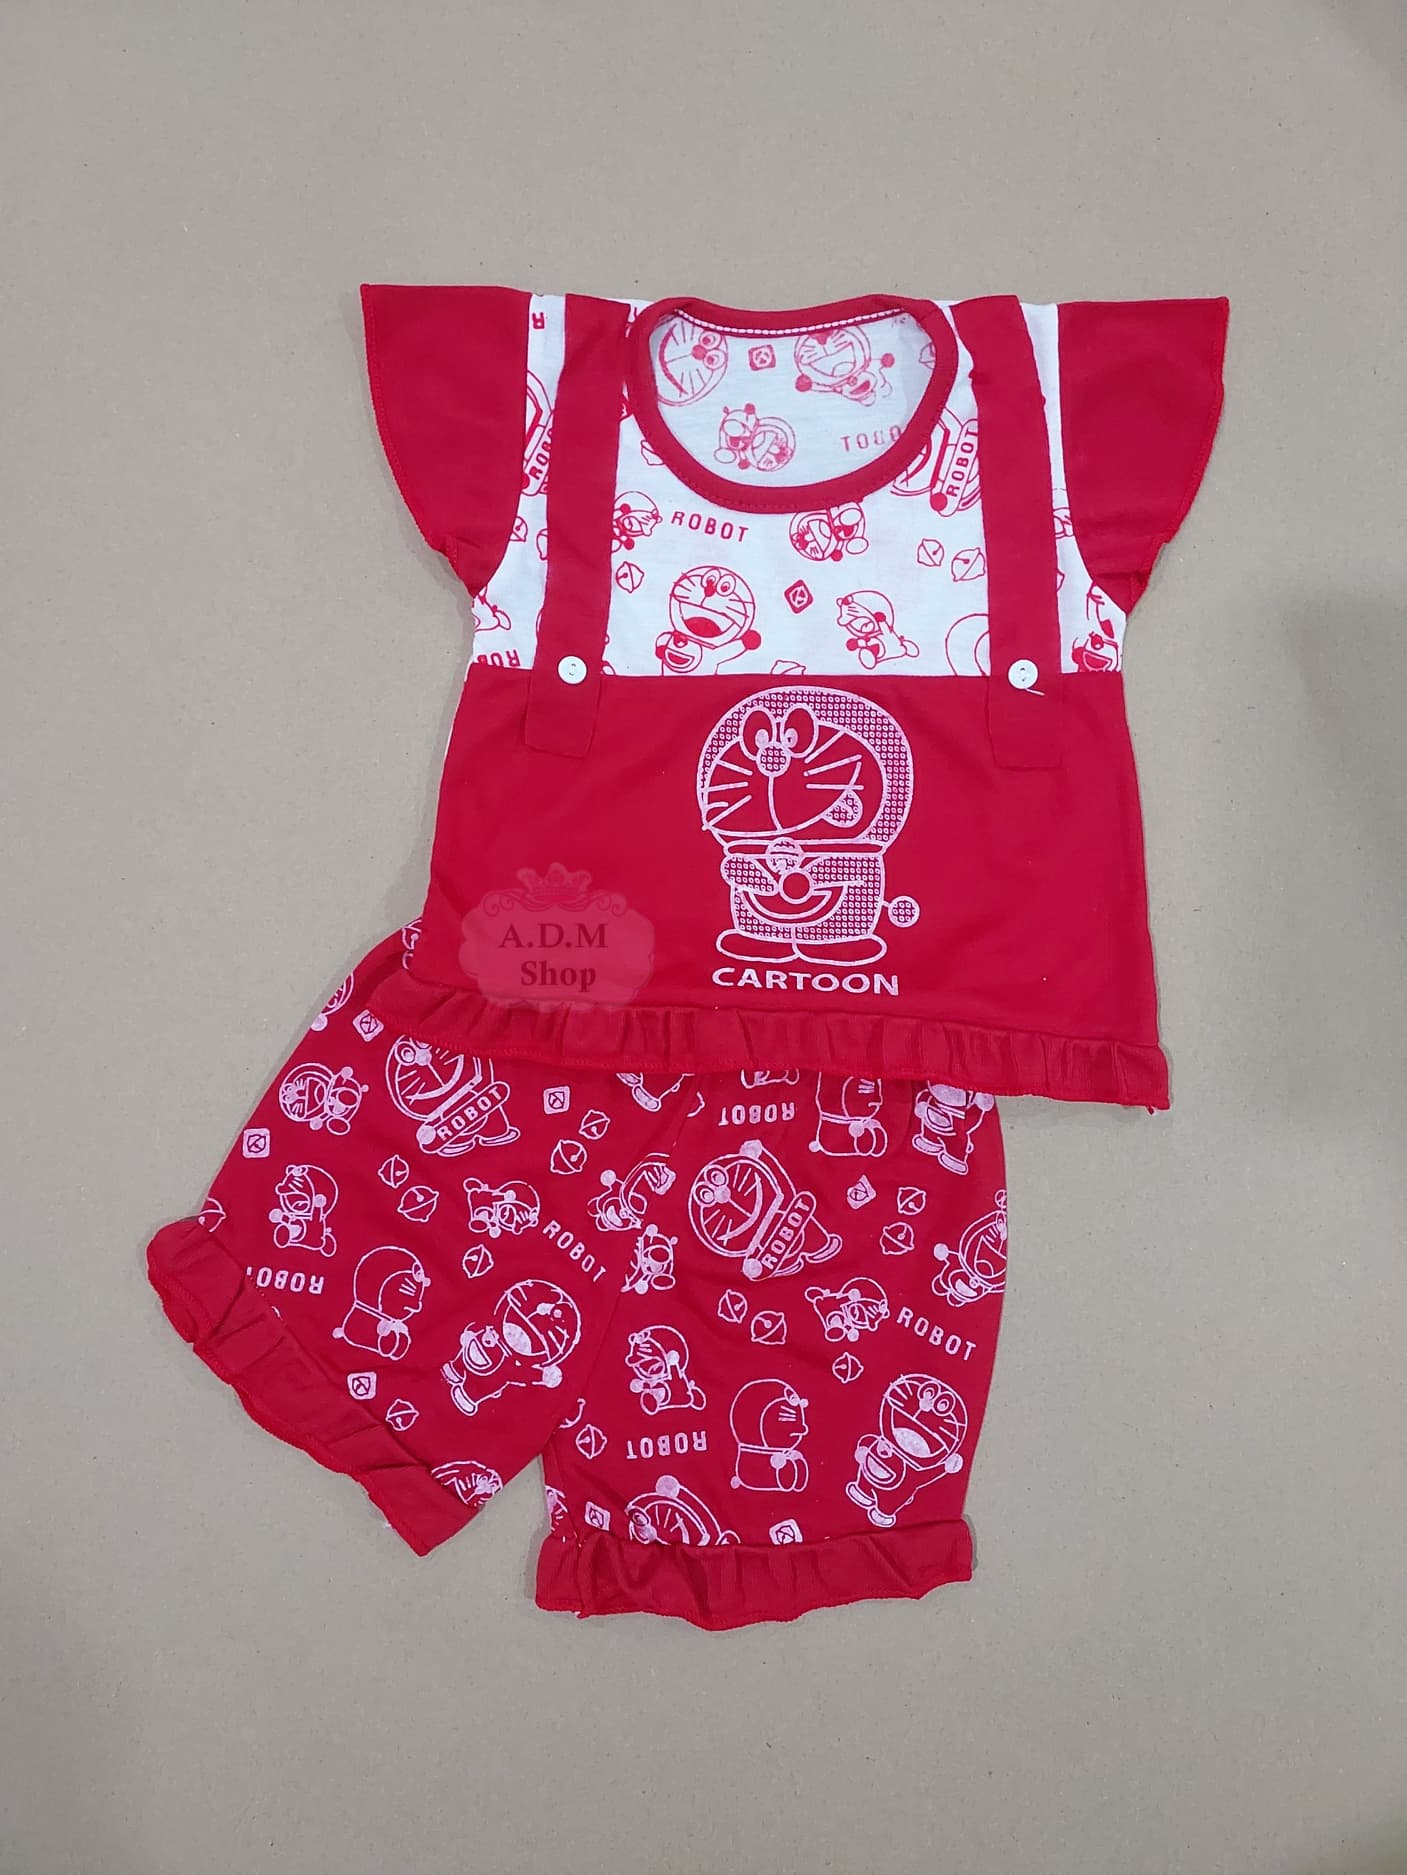 เสื้อผ้าเด็ก ชุดเด็กหญิง ลายการ์ตูน ไซส์ S อายุ 2 เดือน - 1 ขวบ